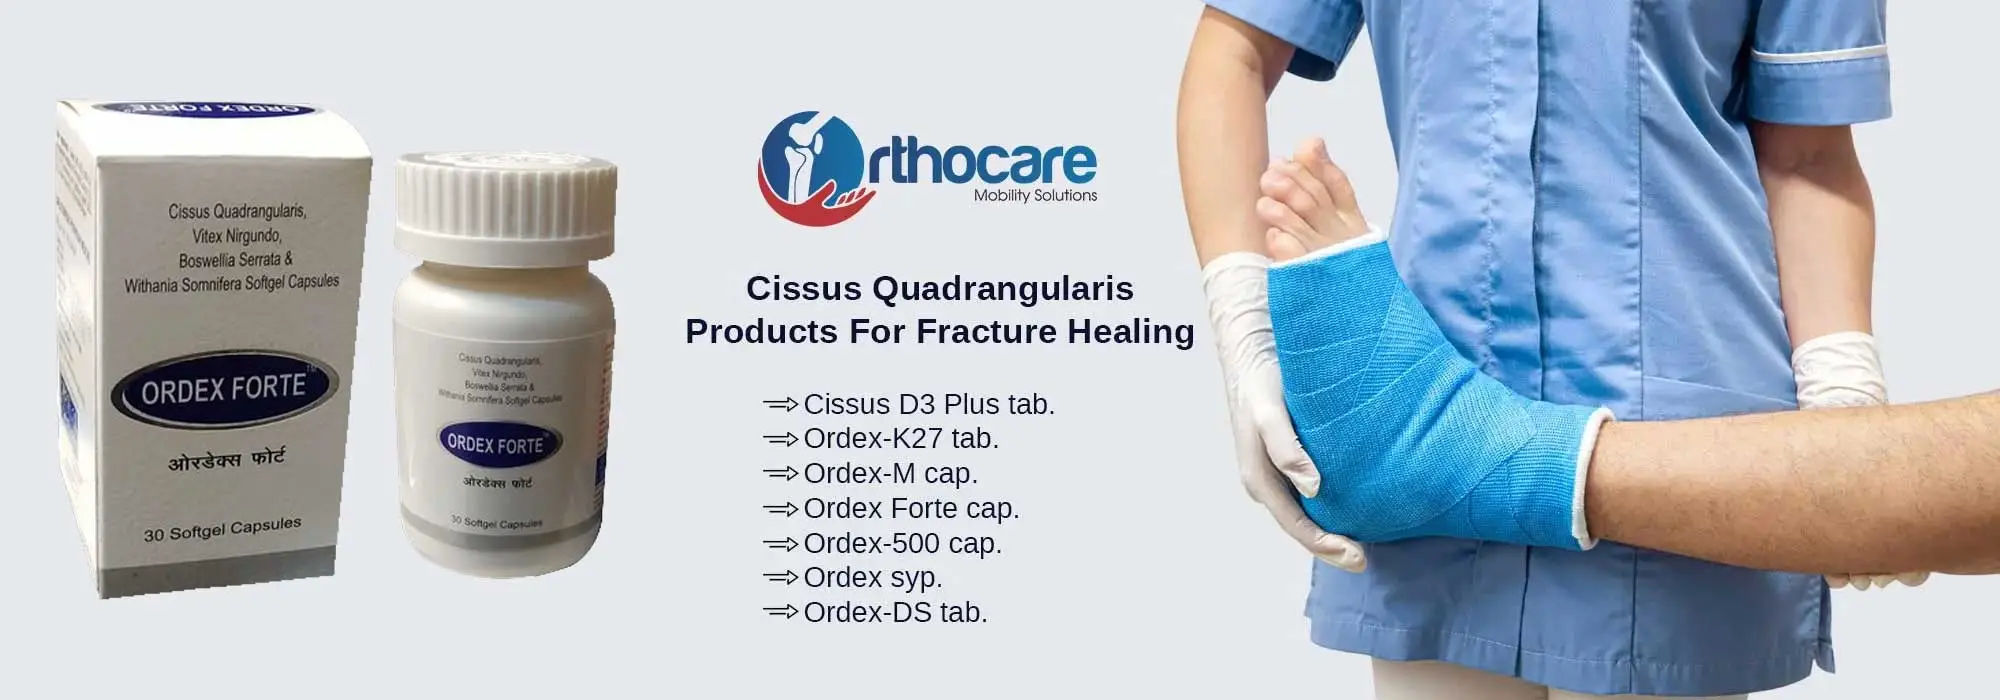 Cissus Quadrangularis Products For Fracture Healing Suppliers in Kota